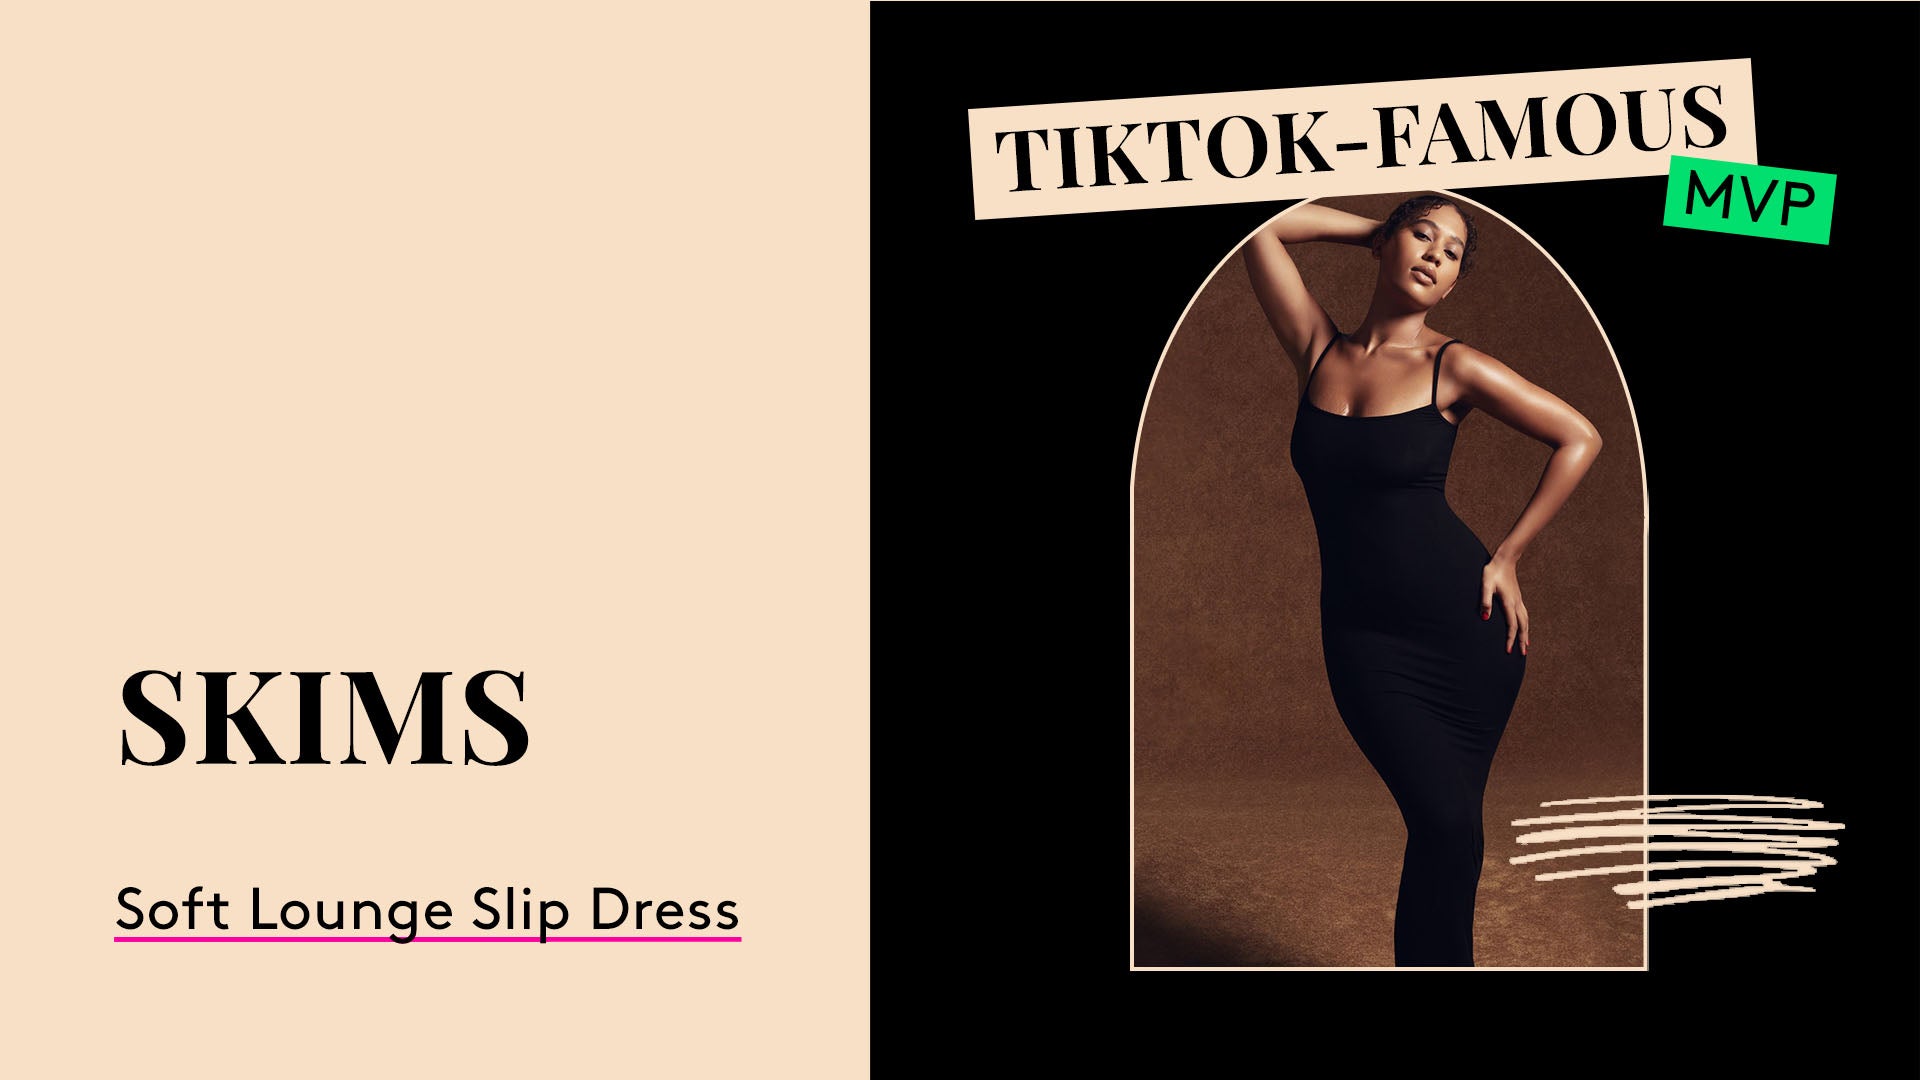 TikTok-Famous MVP. SKIMS Soft Lounge Long Slip Dress.